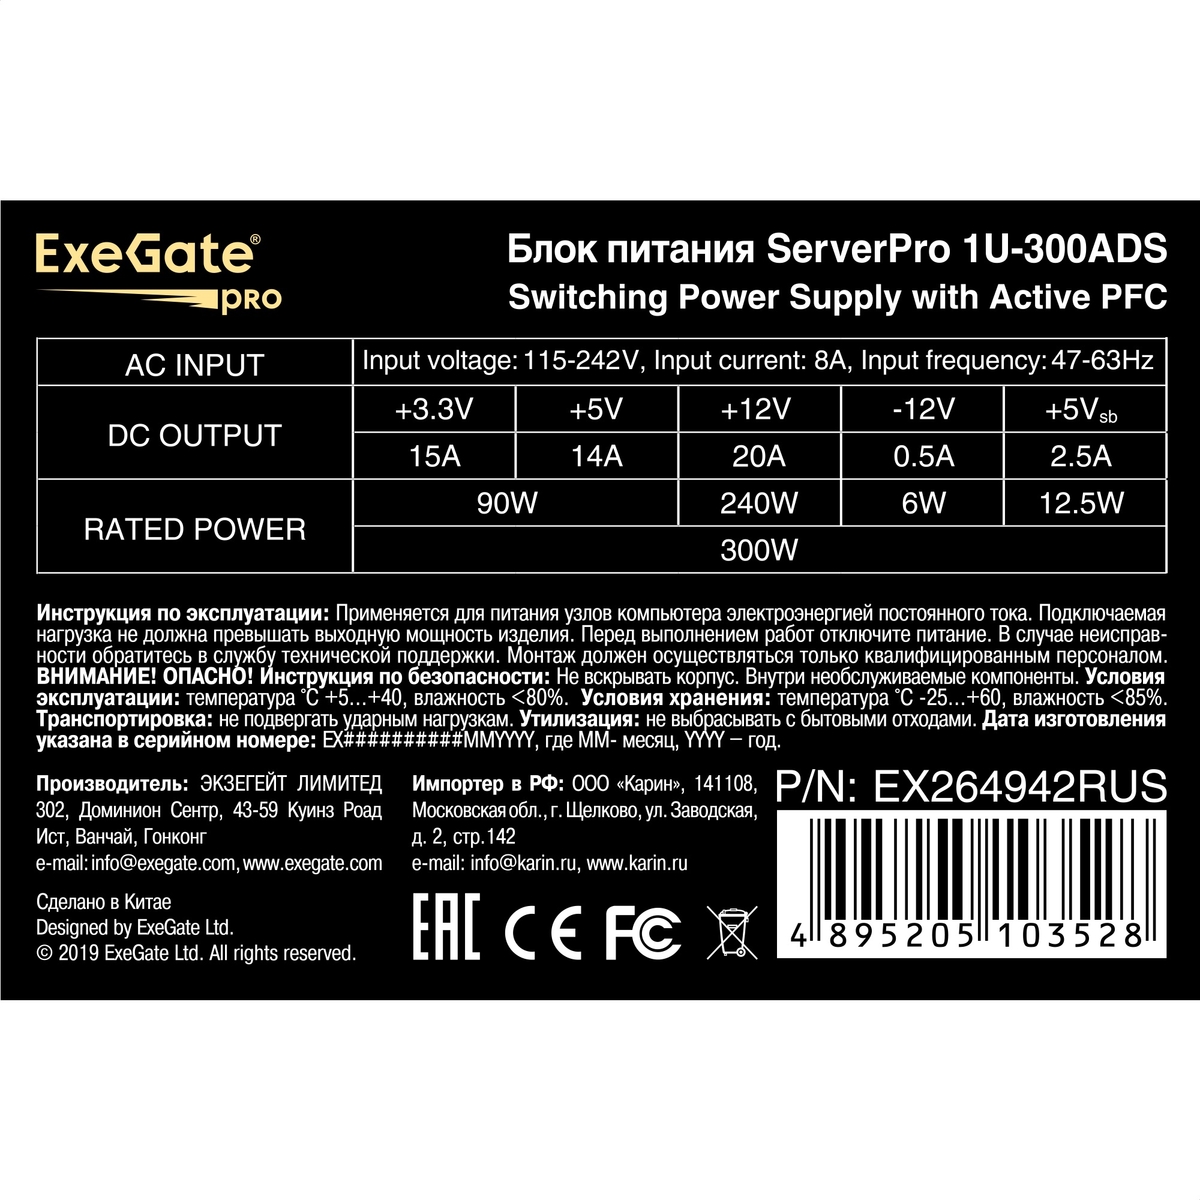 Серверный БП 300W ExeGate ServerPRO-1U-300ADS КПД 80%